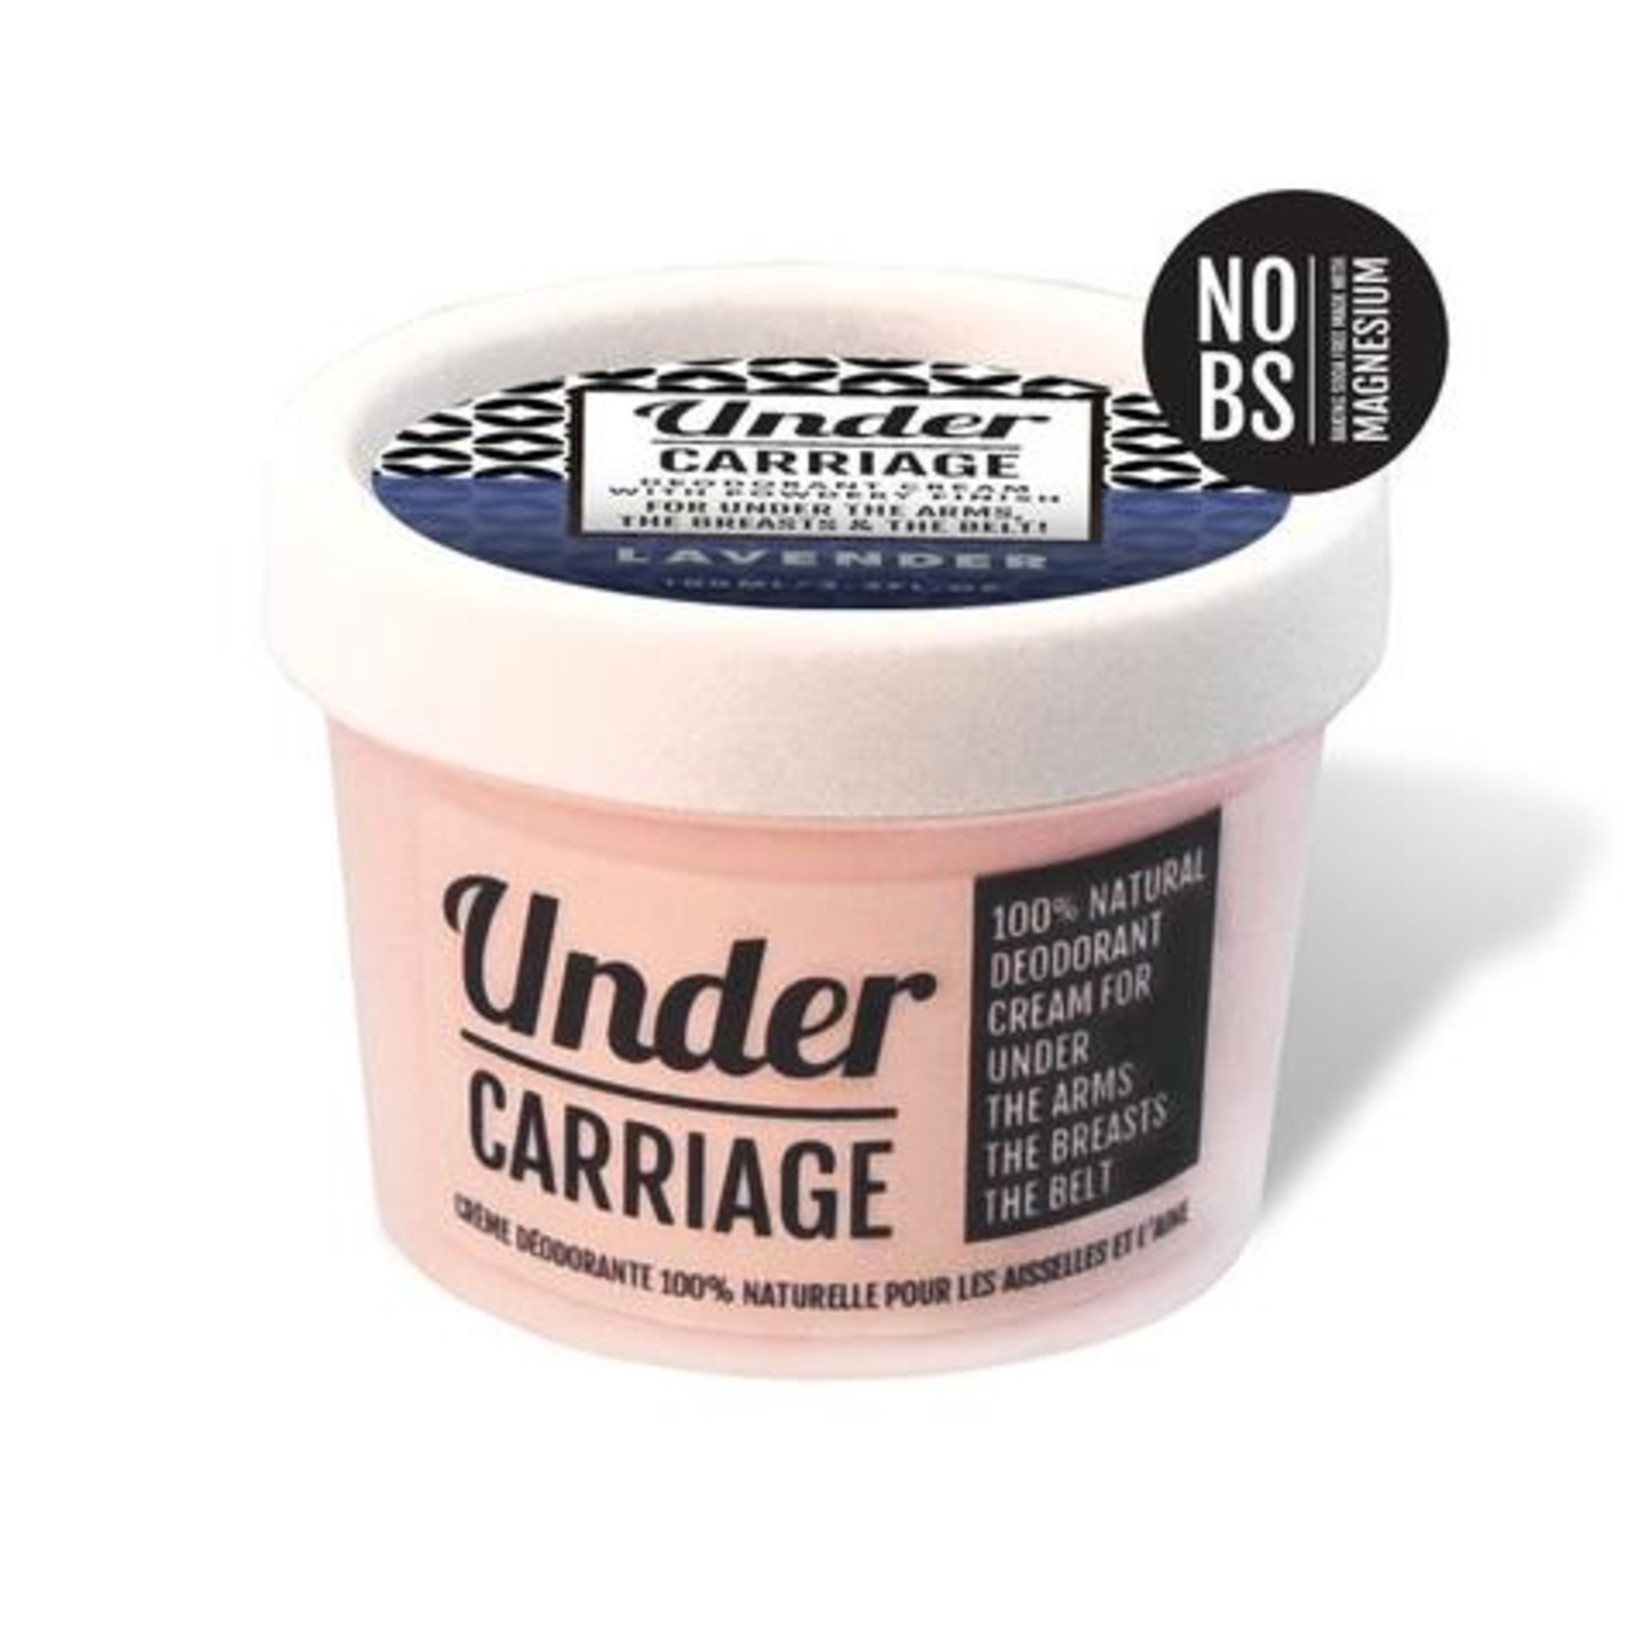 Under Carriage Deodorant Cream